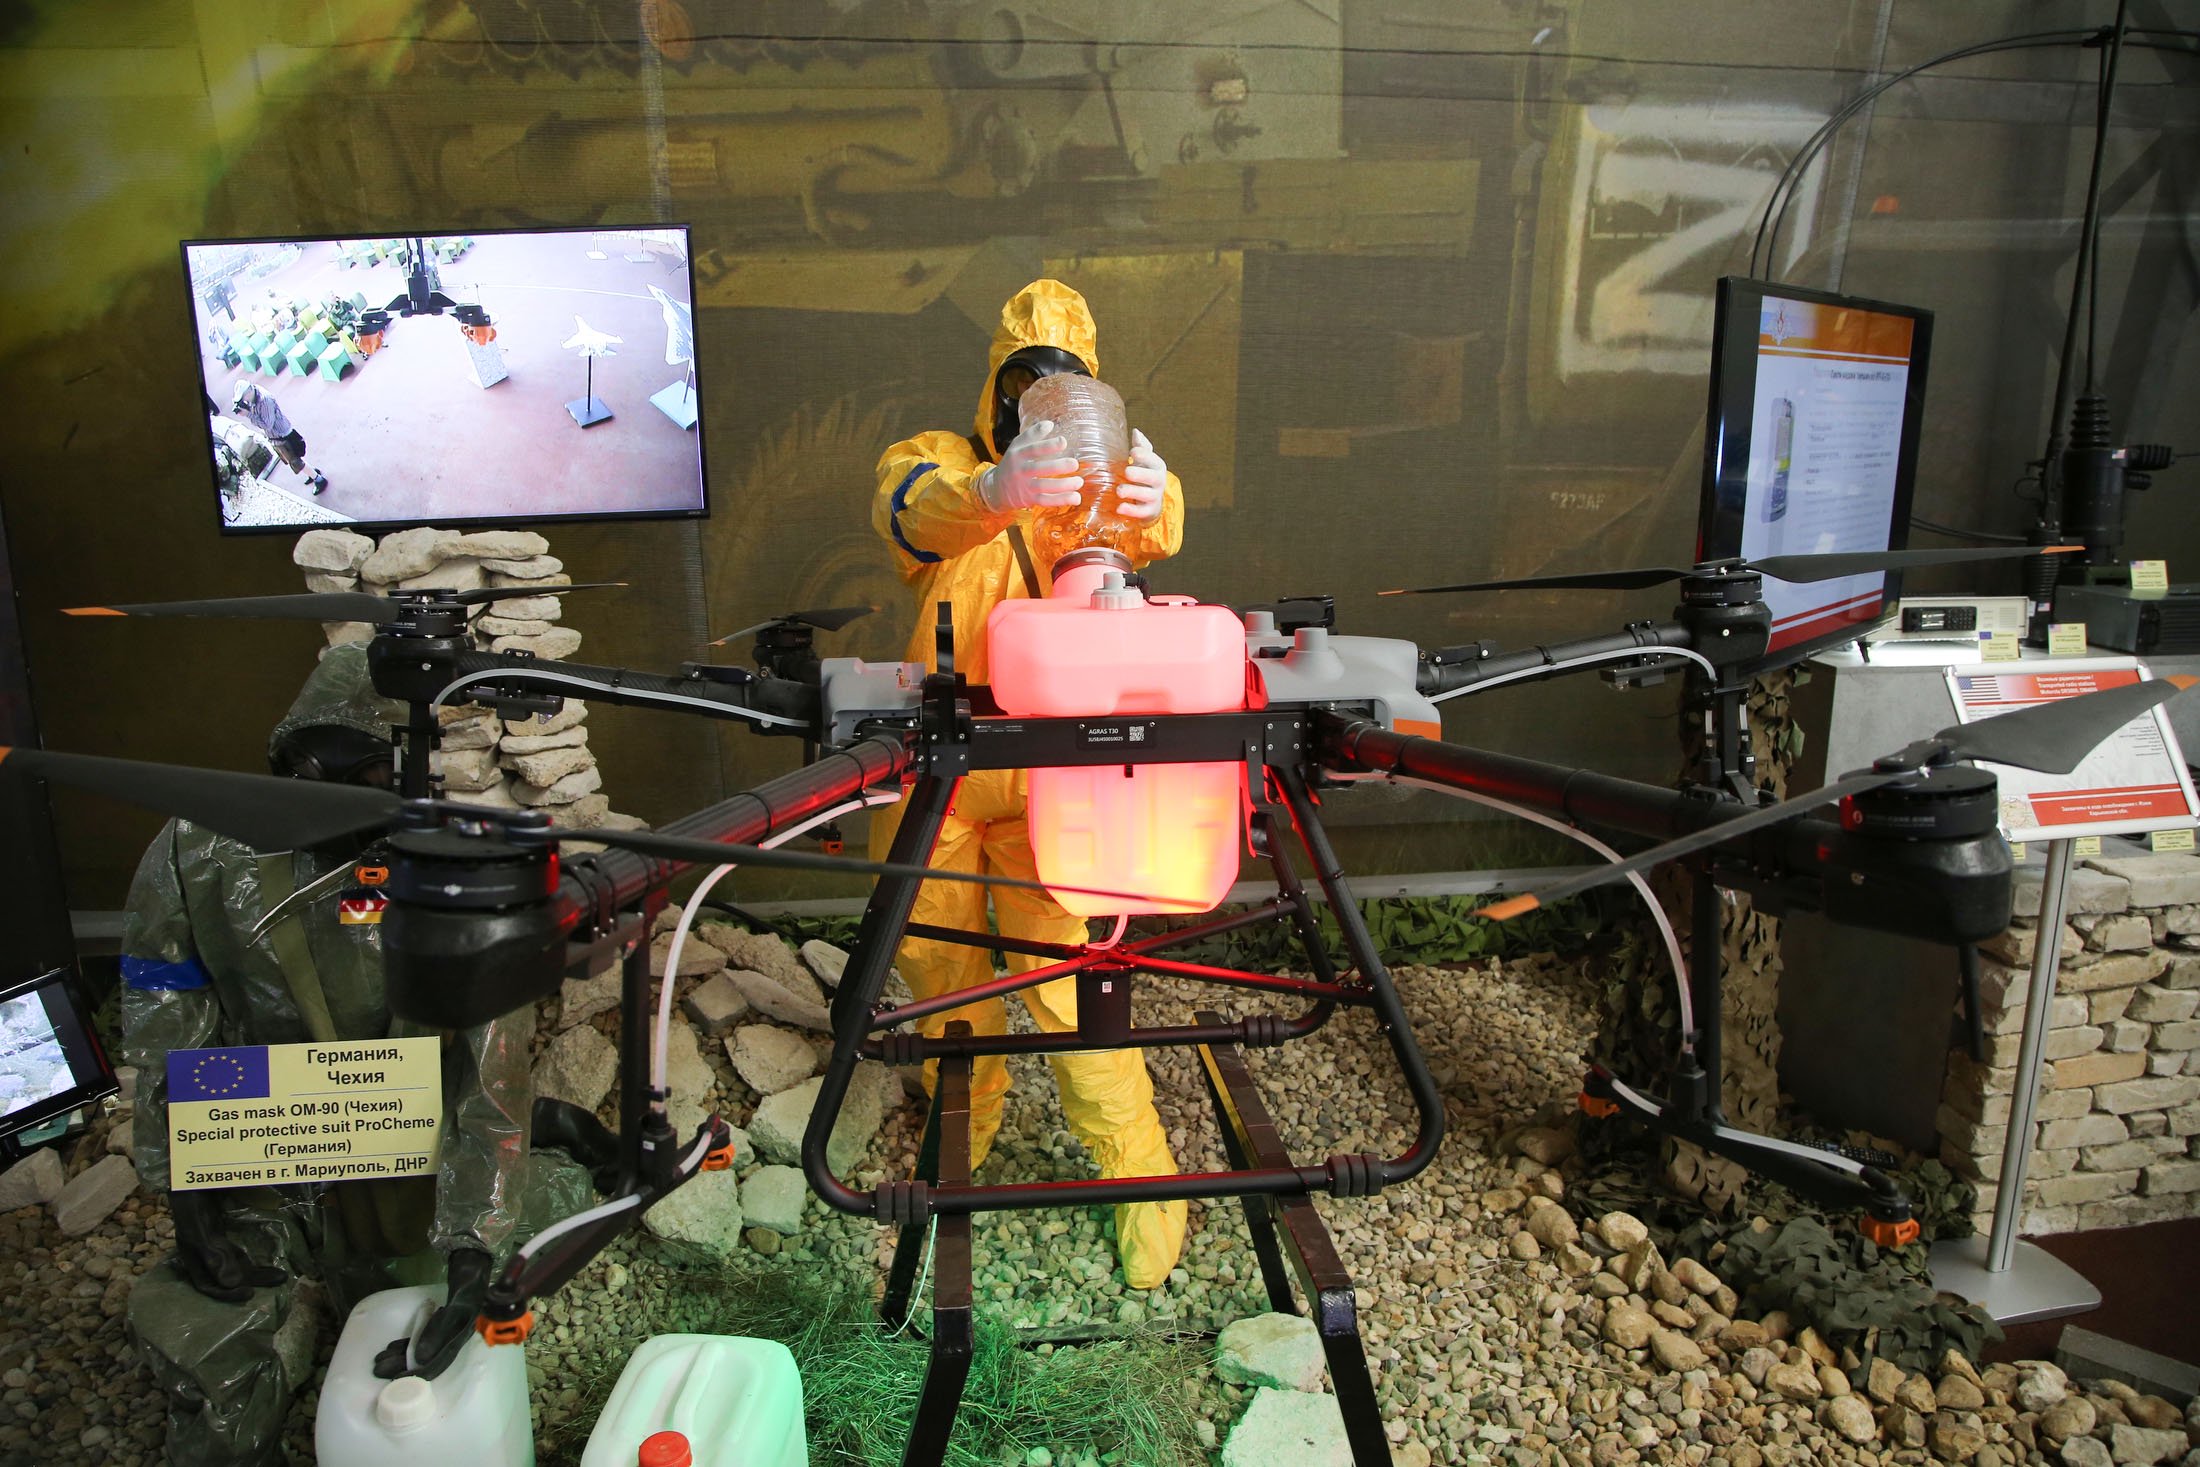 Rosjanie podają drona rolniczego DJI Agras T30 jako amerykańskiego drona bojowego z bronią chemiczną z ukraińskiego laboratorium biologicznego